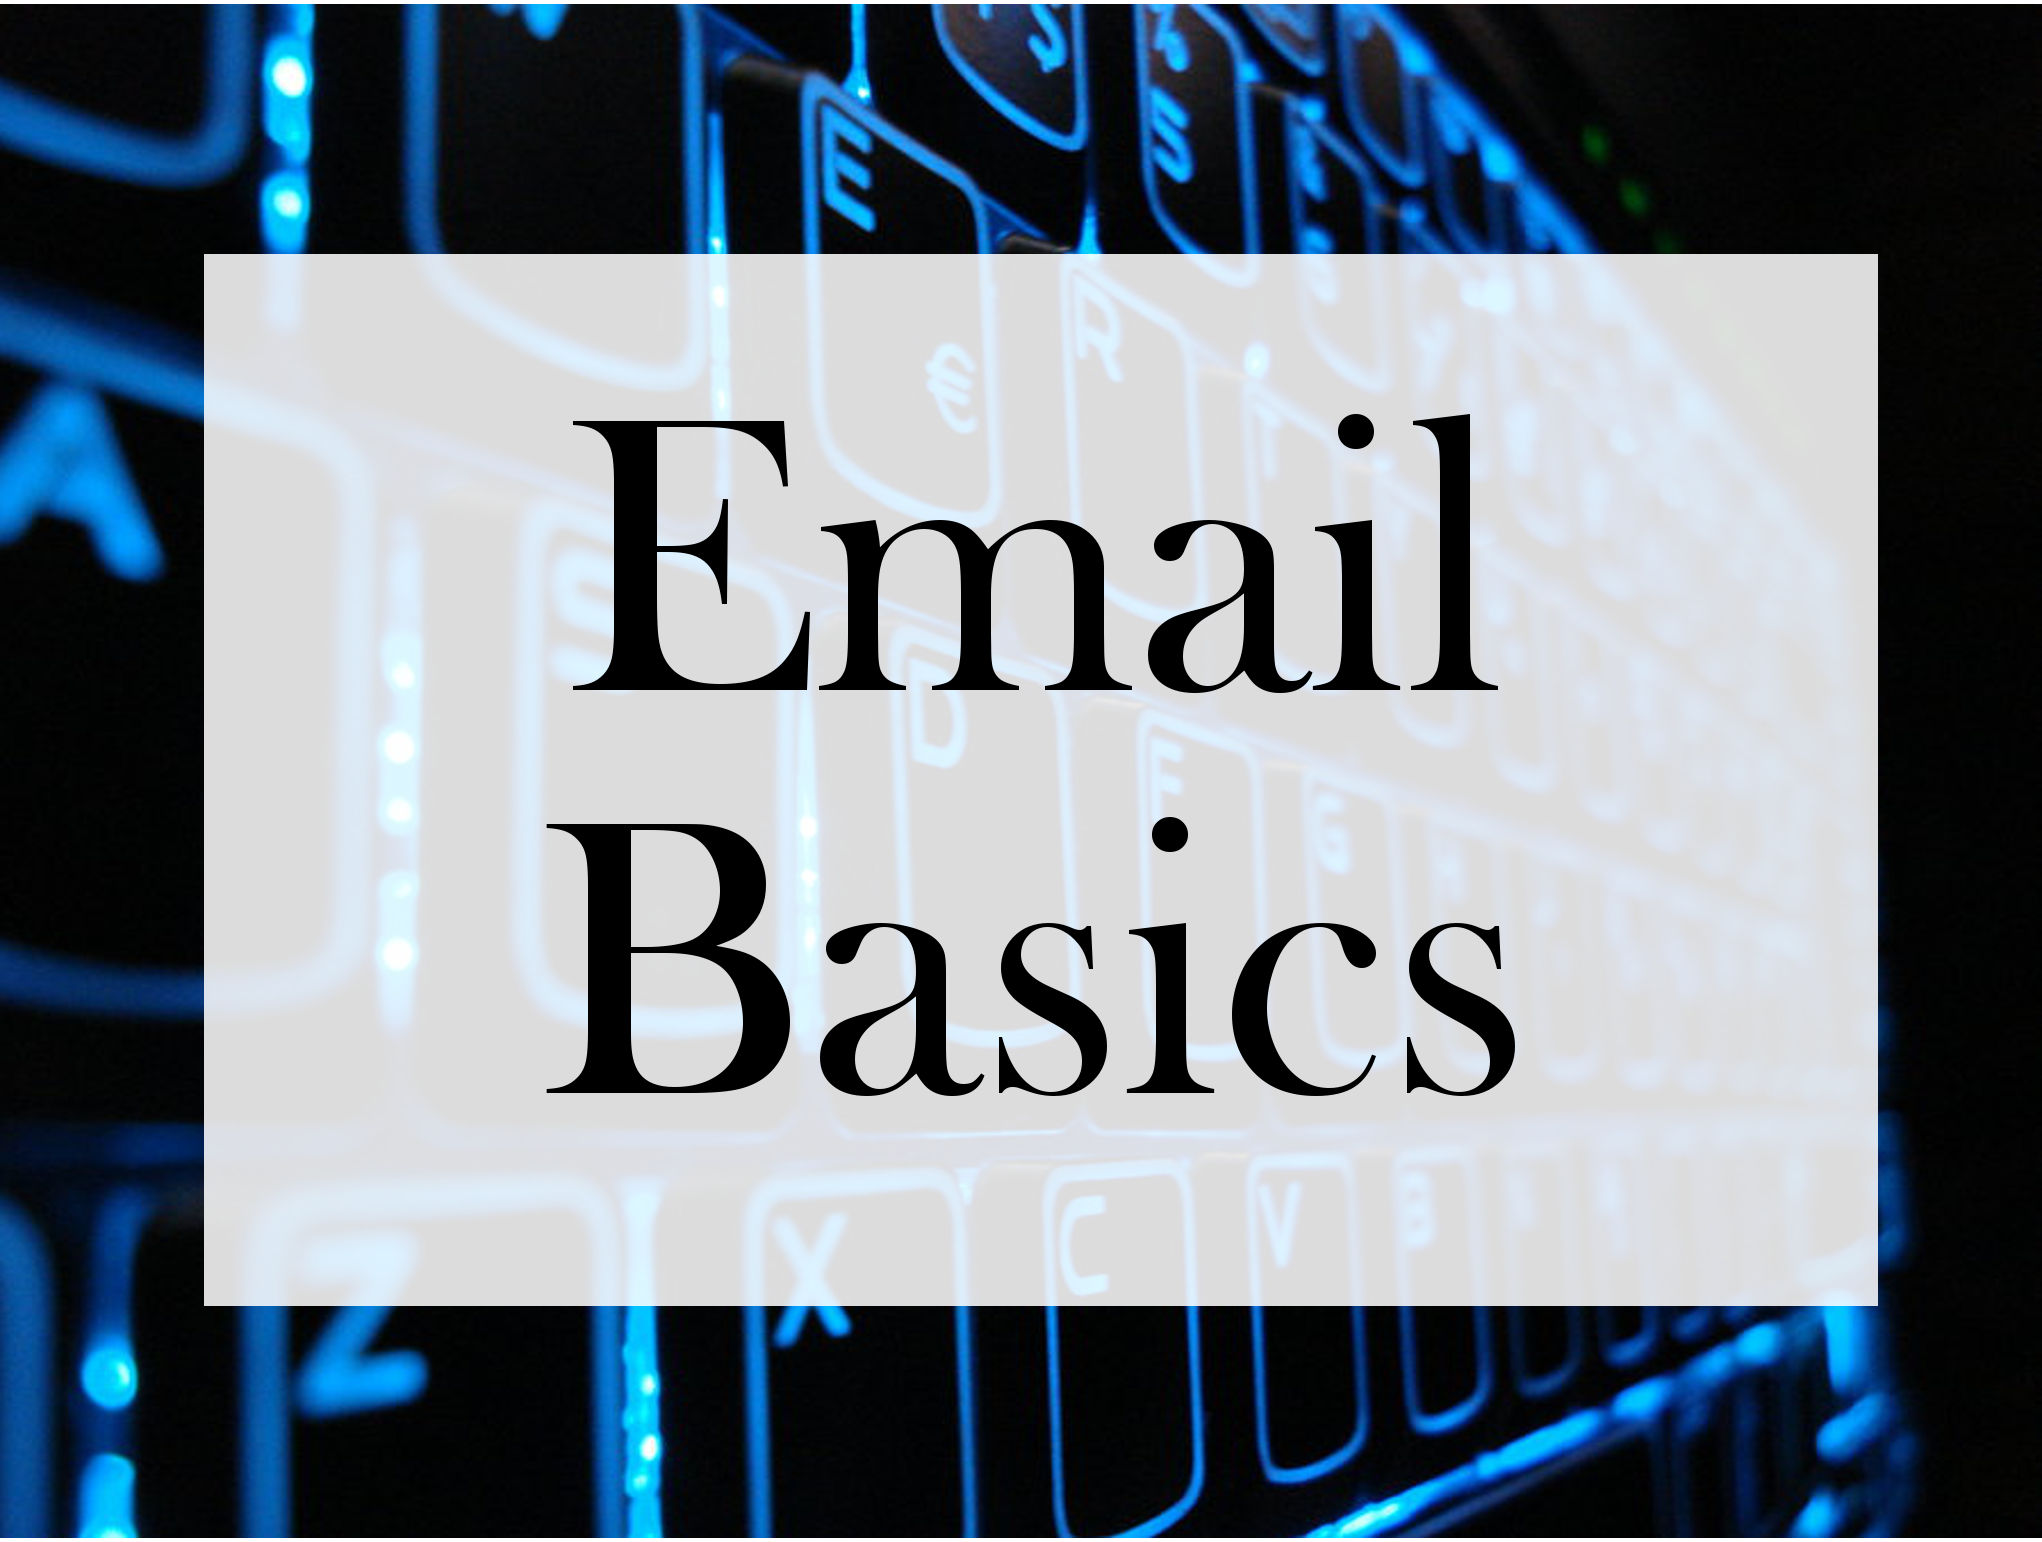 email basics